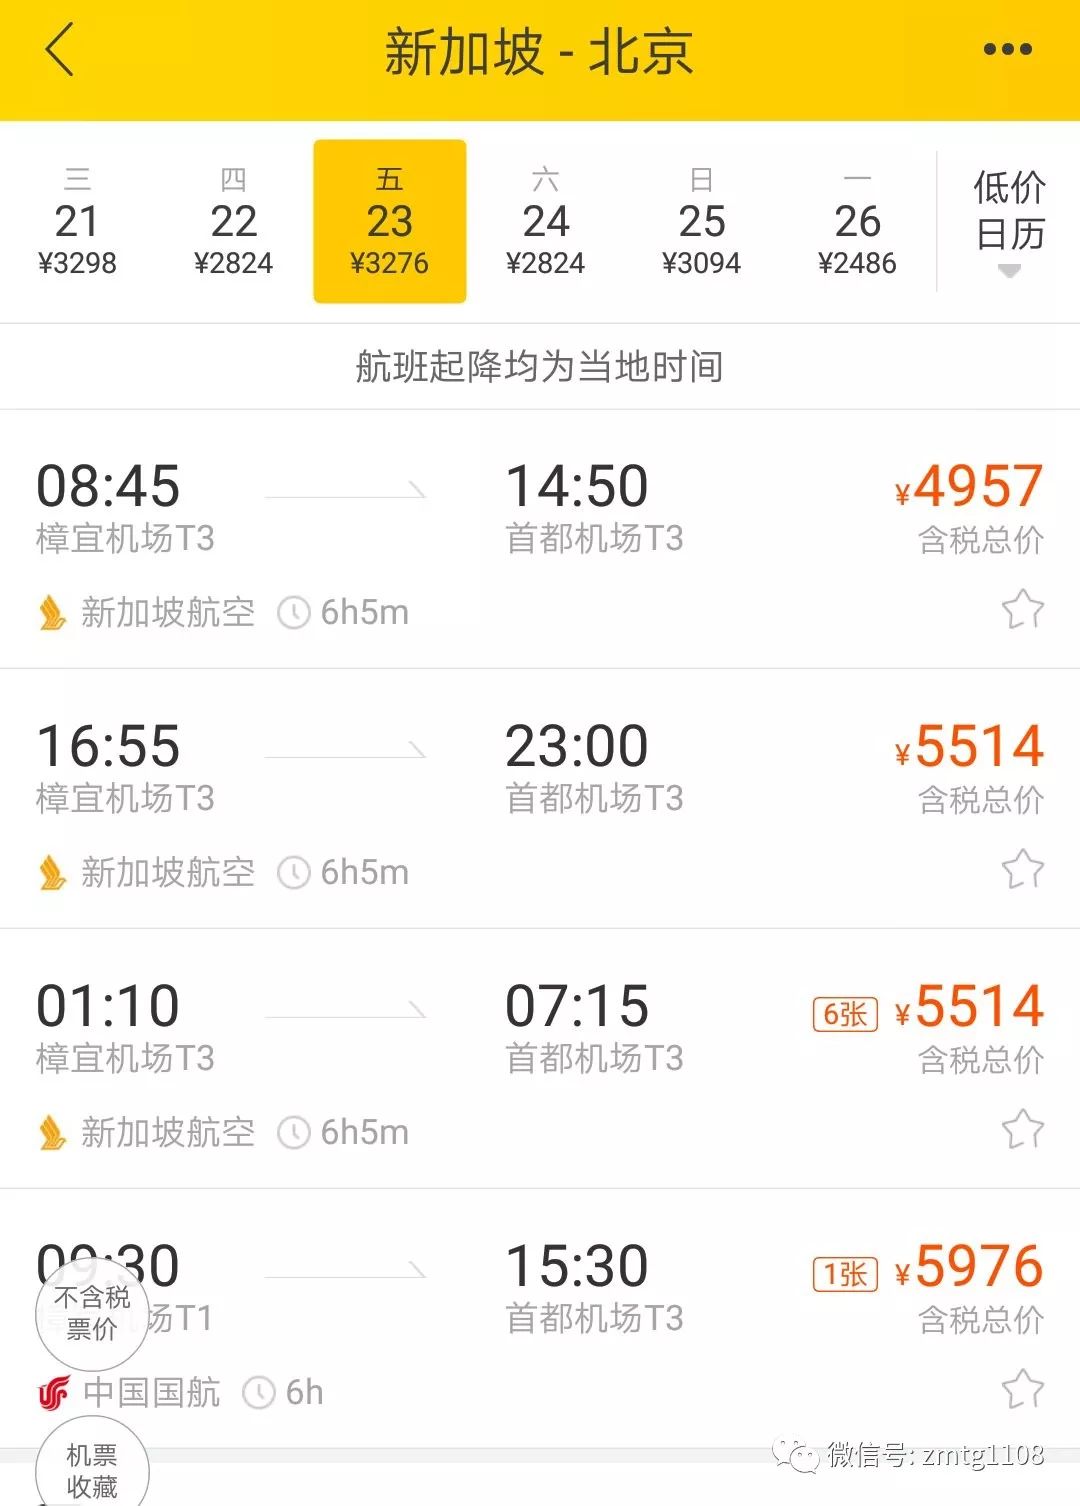 三亚返京机票暴涨近10倍,海口到深圳需要到哈